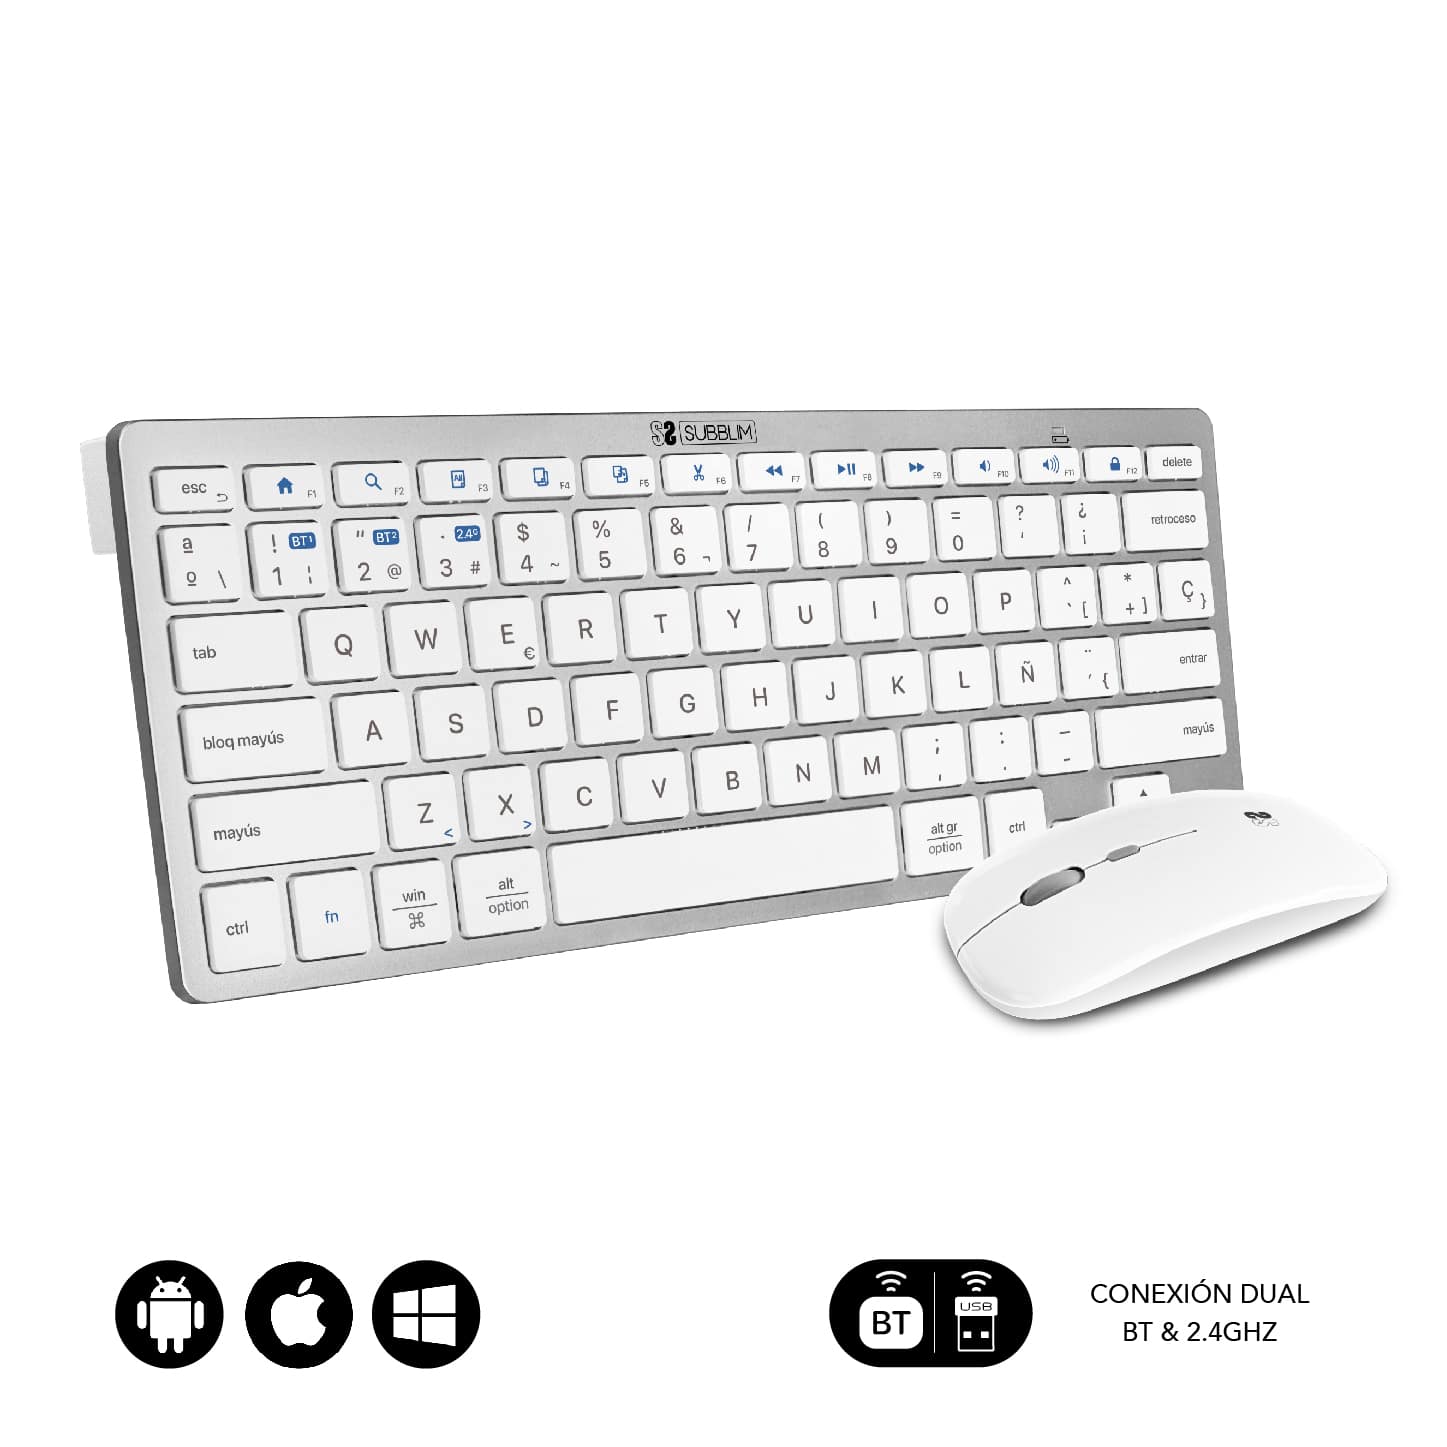 teclado y ratón blanco y plateado compactos multidispositivo. Ideal para escritorios pequeños, viajes y trabajo en entornos multidispositivo